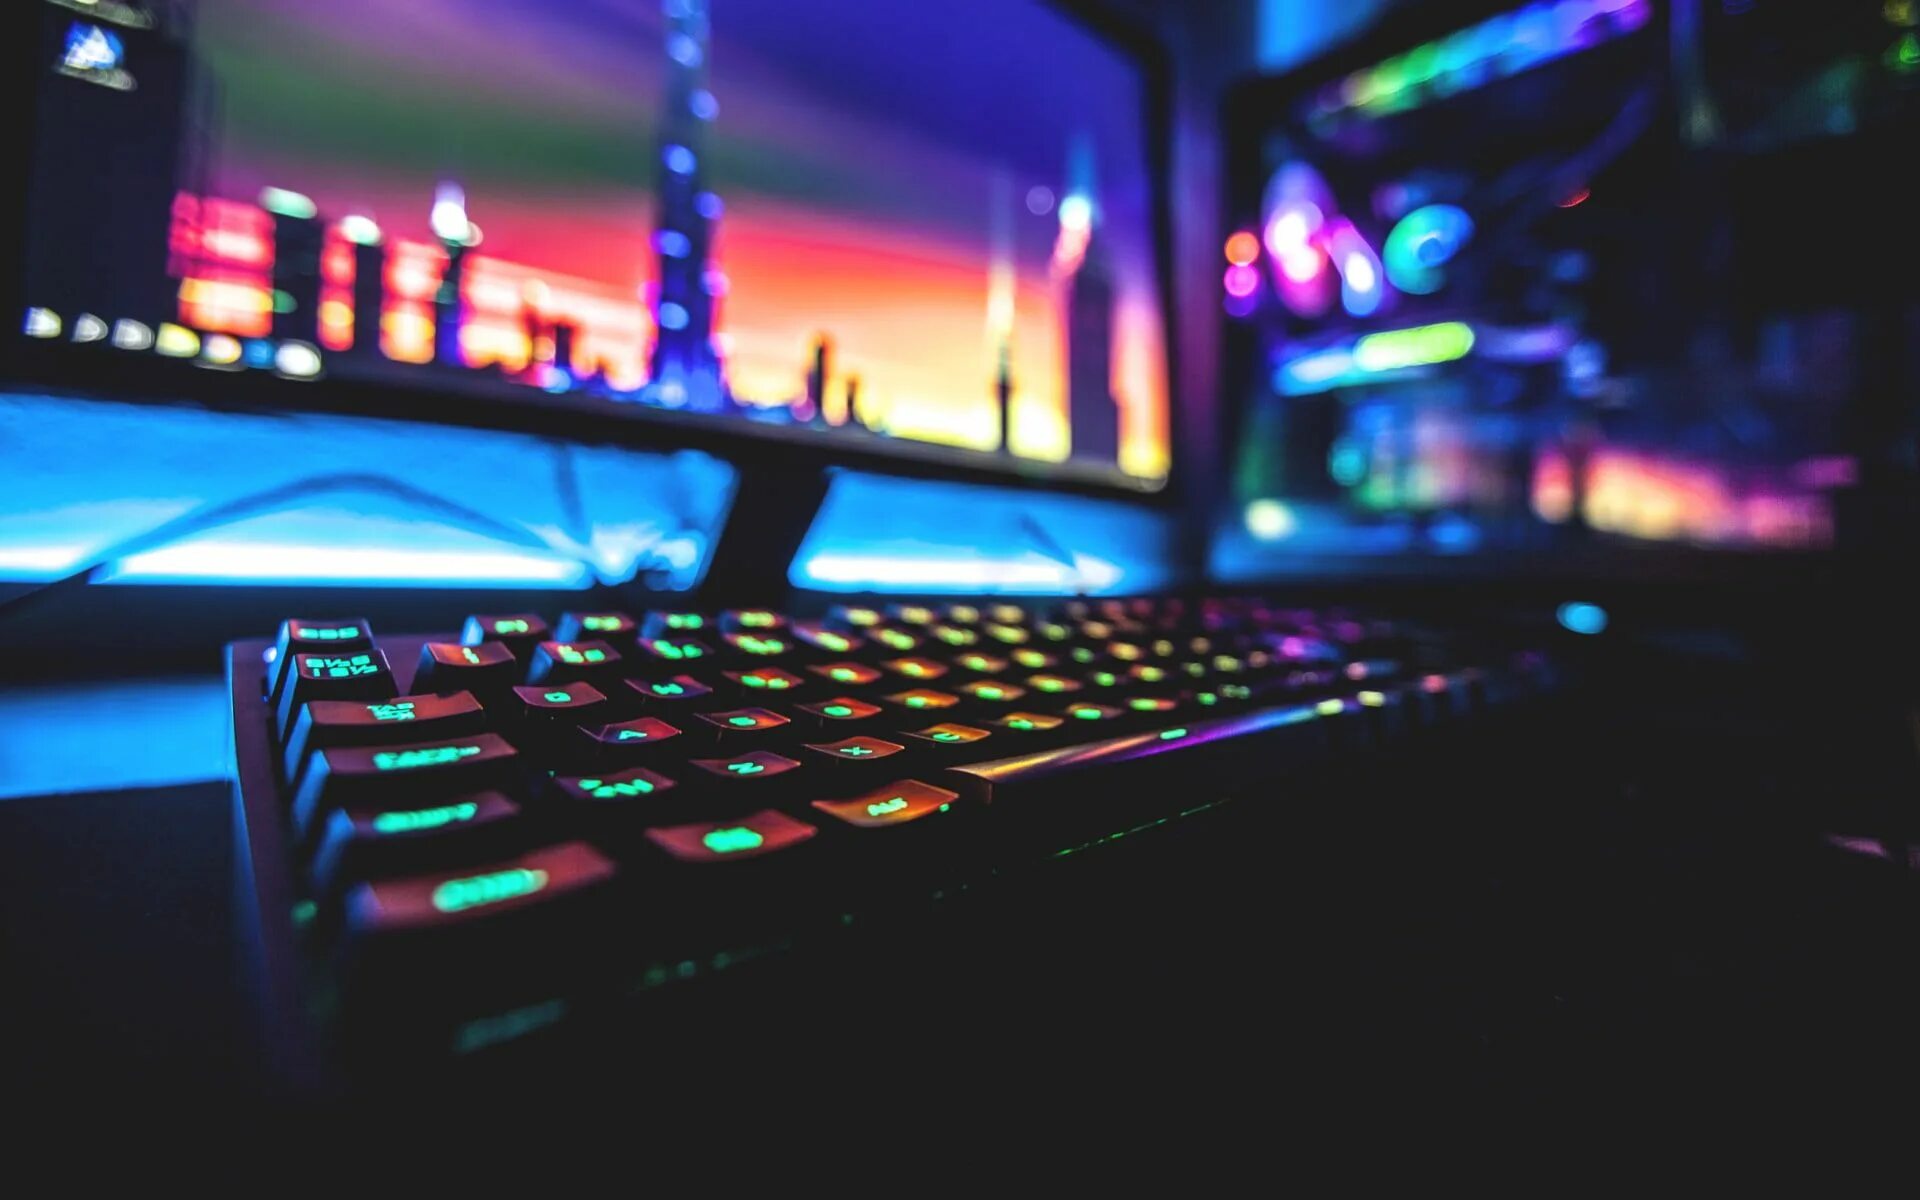 Night gamer full. Красивый компьютер. Обои на компьютер. Неоновые картинки на рабочий стол. Компьютерный фон.